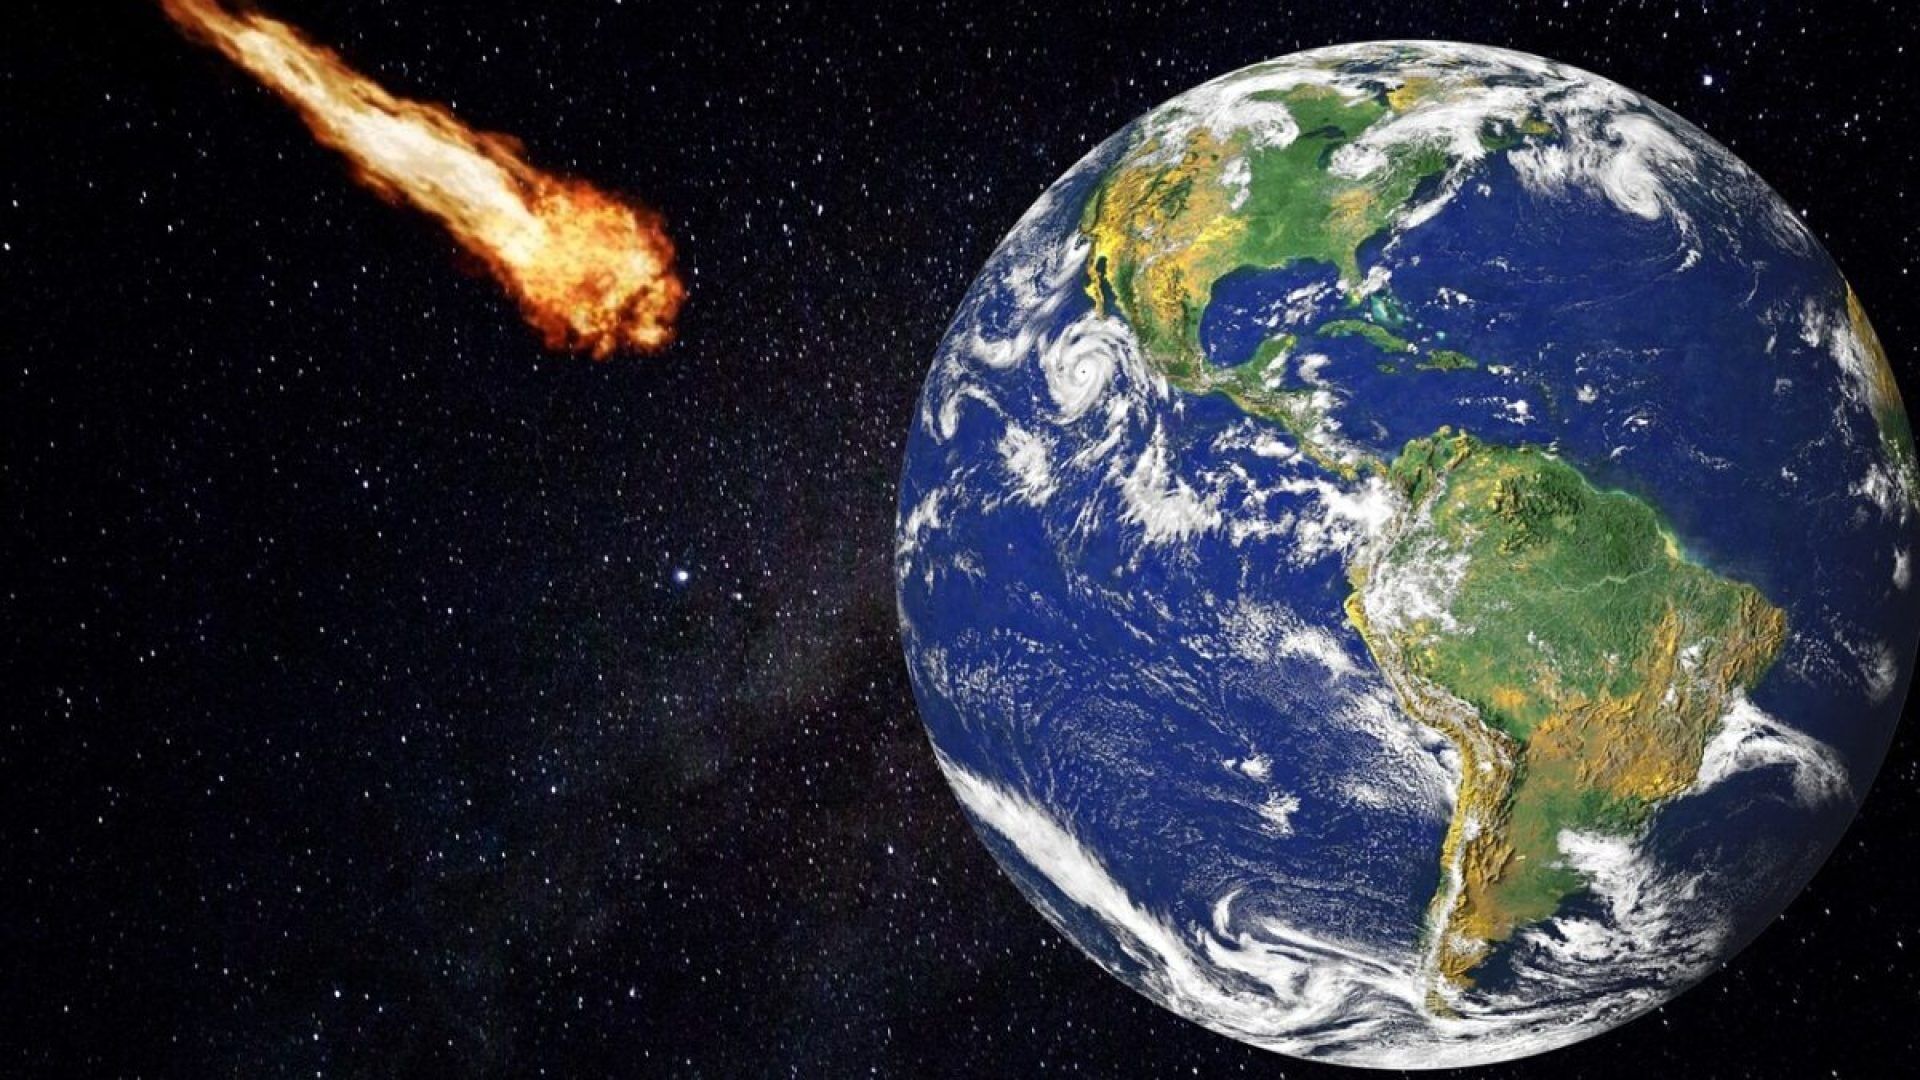 asteroide impatto terra 2046